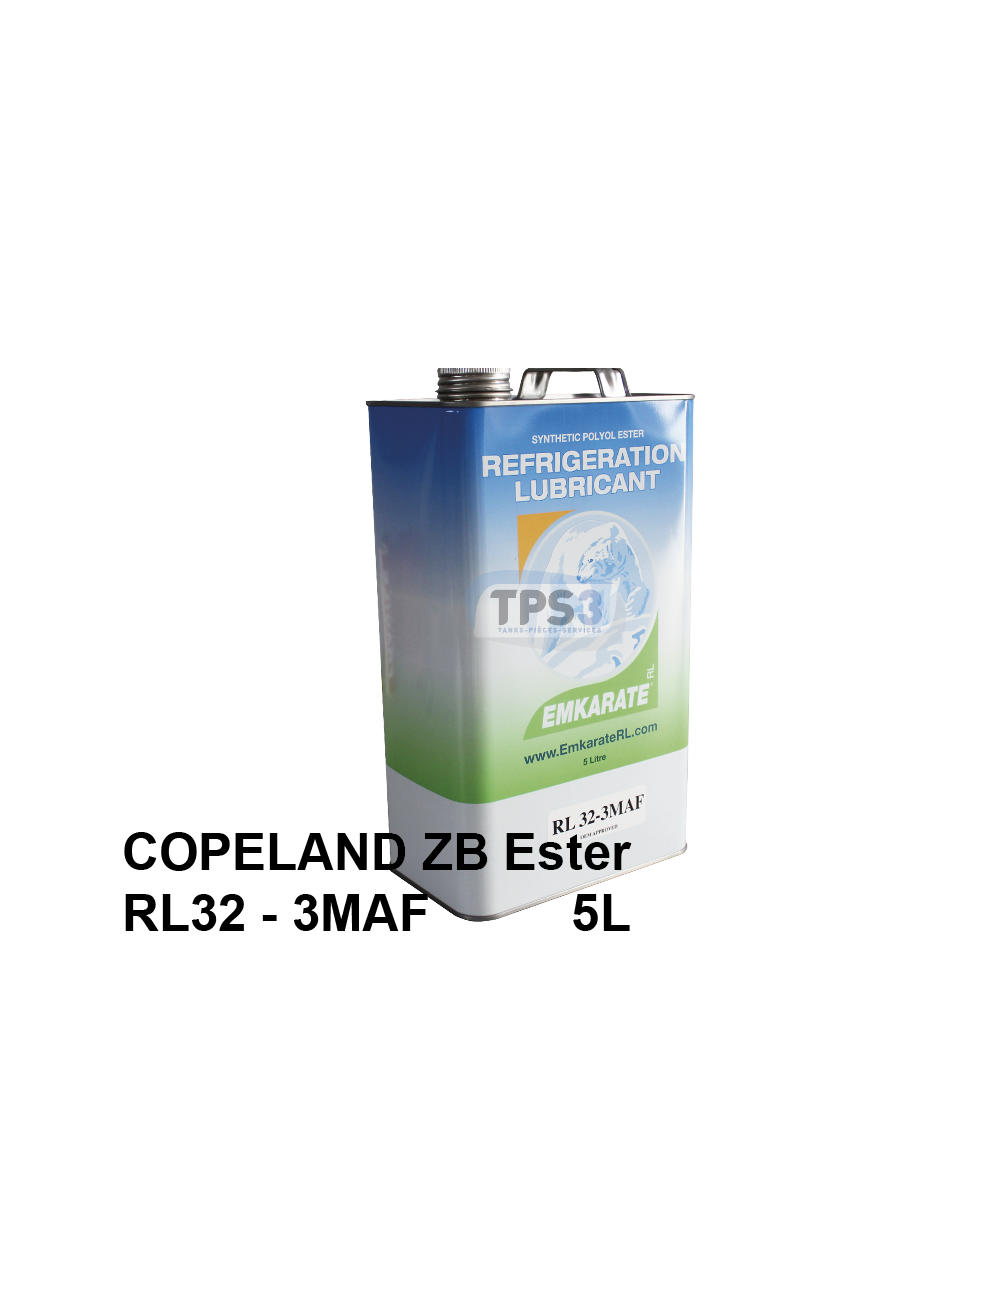 Huile frigorifique Copeland ZB type Ester RL32-3MAF bidon de 5L